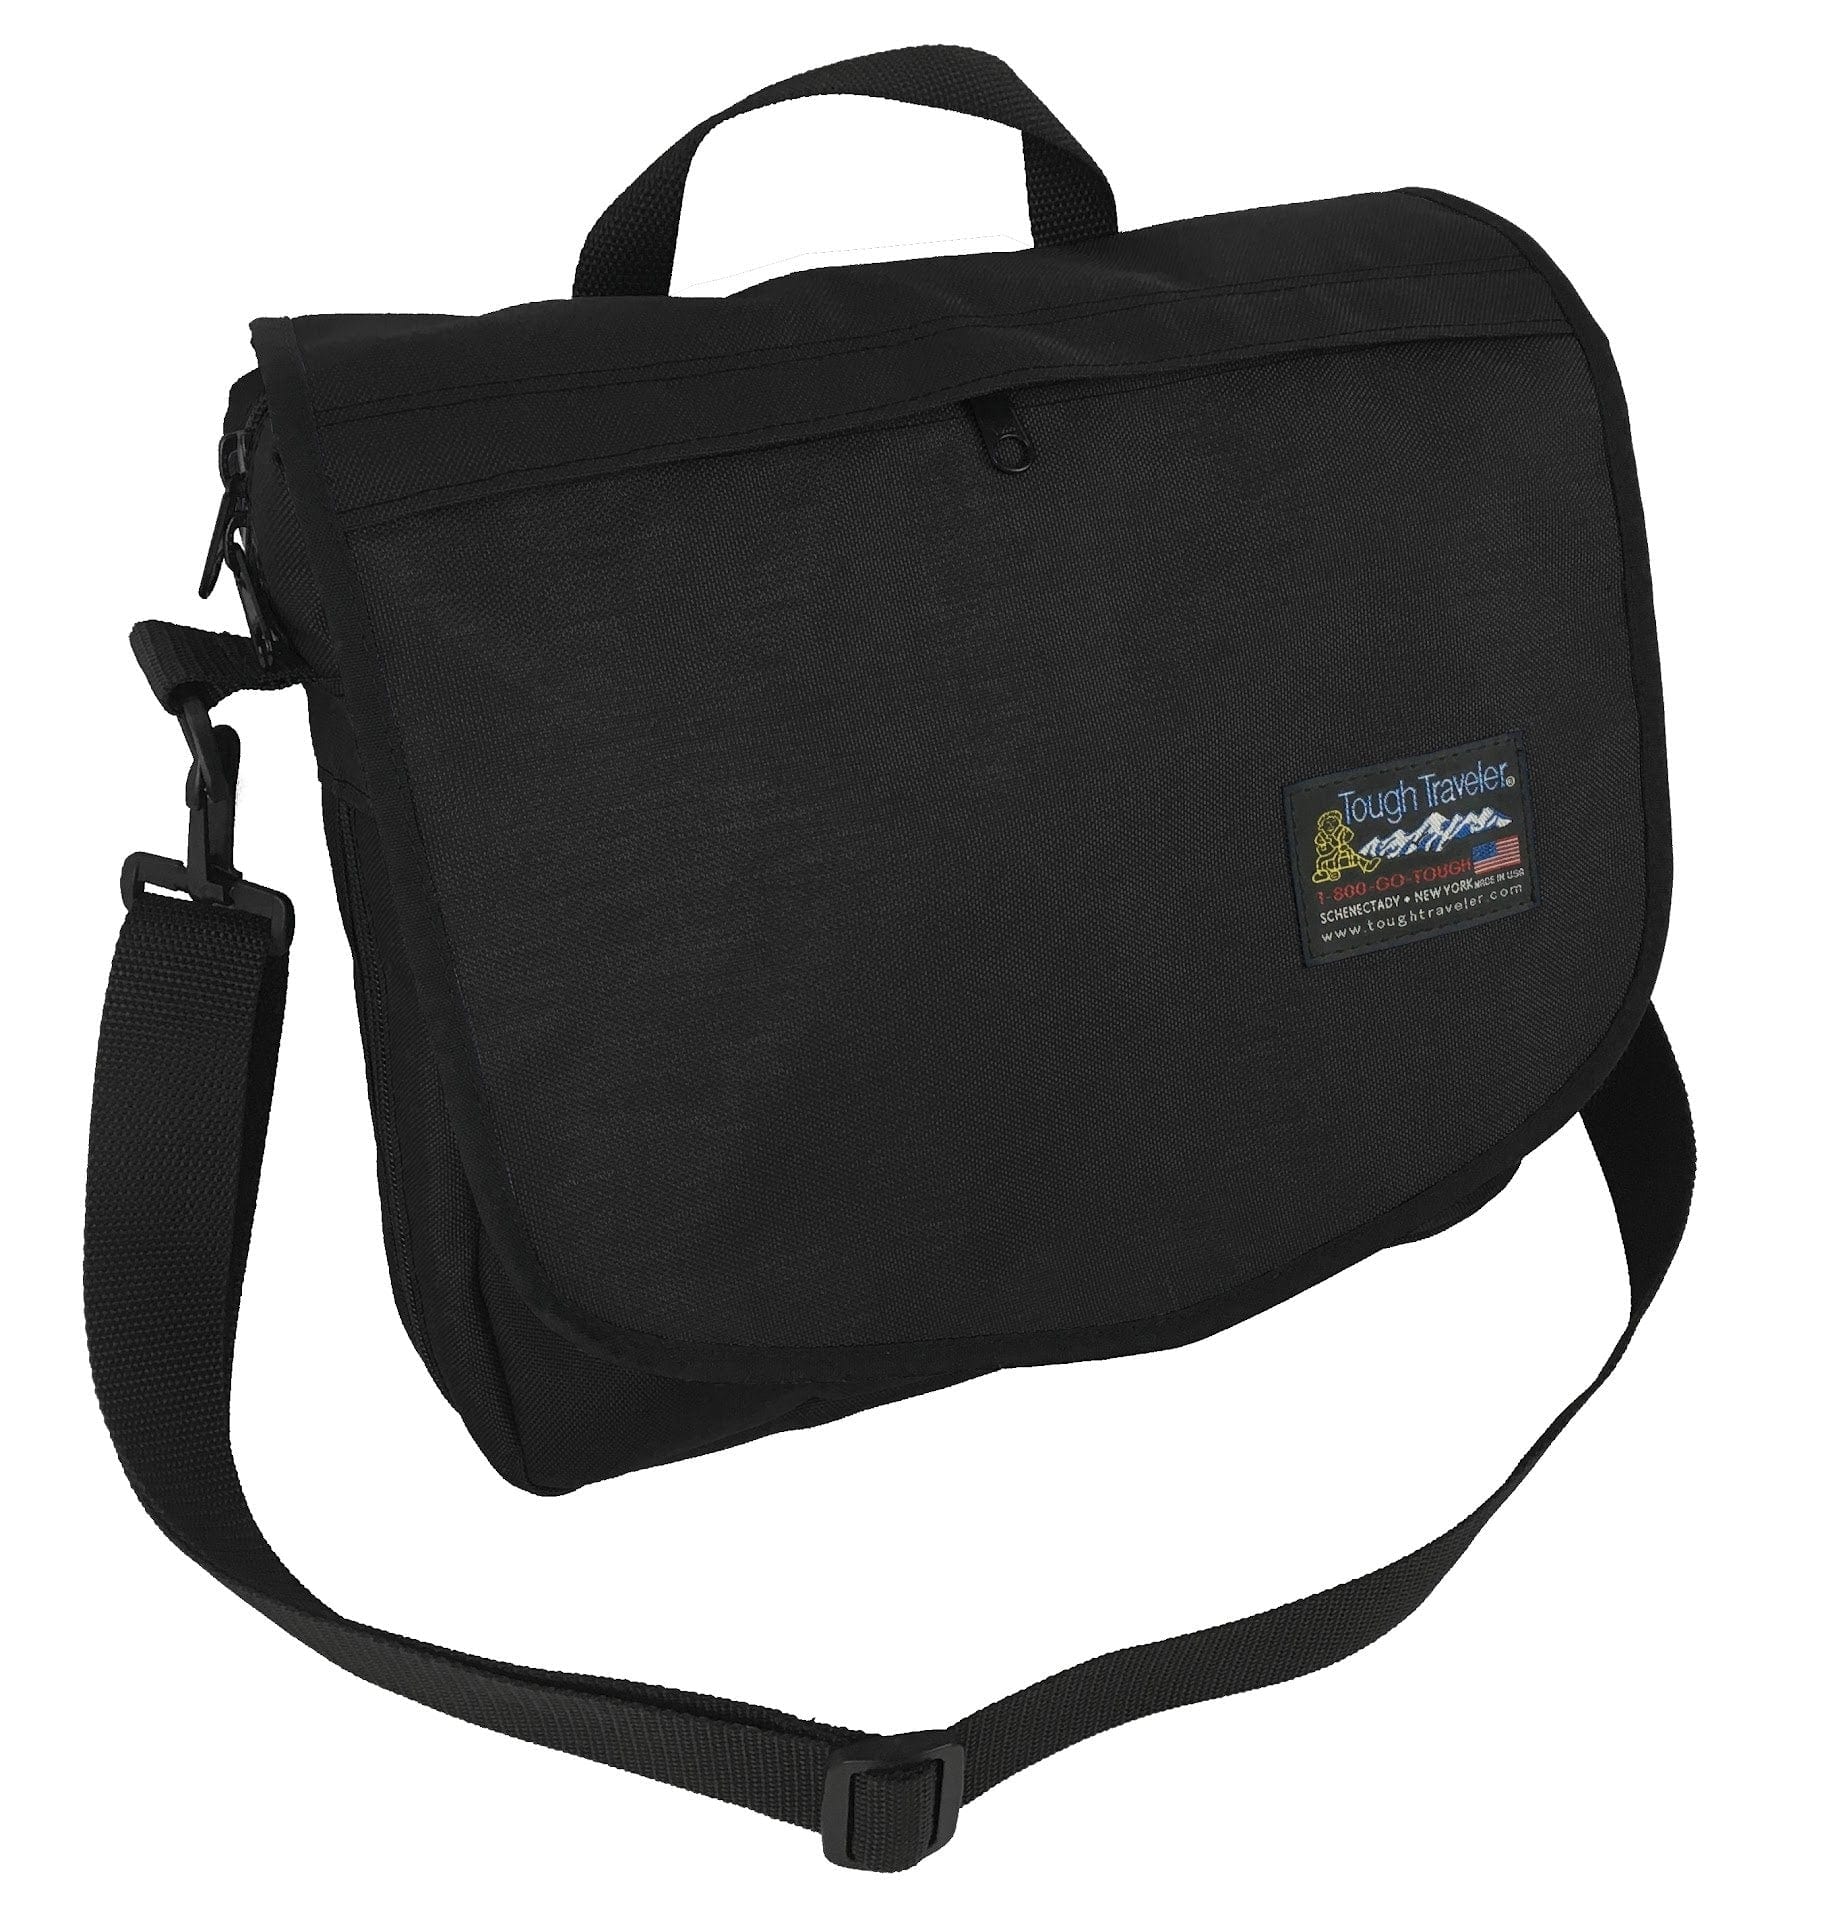 Allback messenger bag